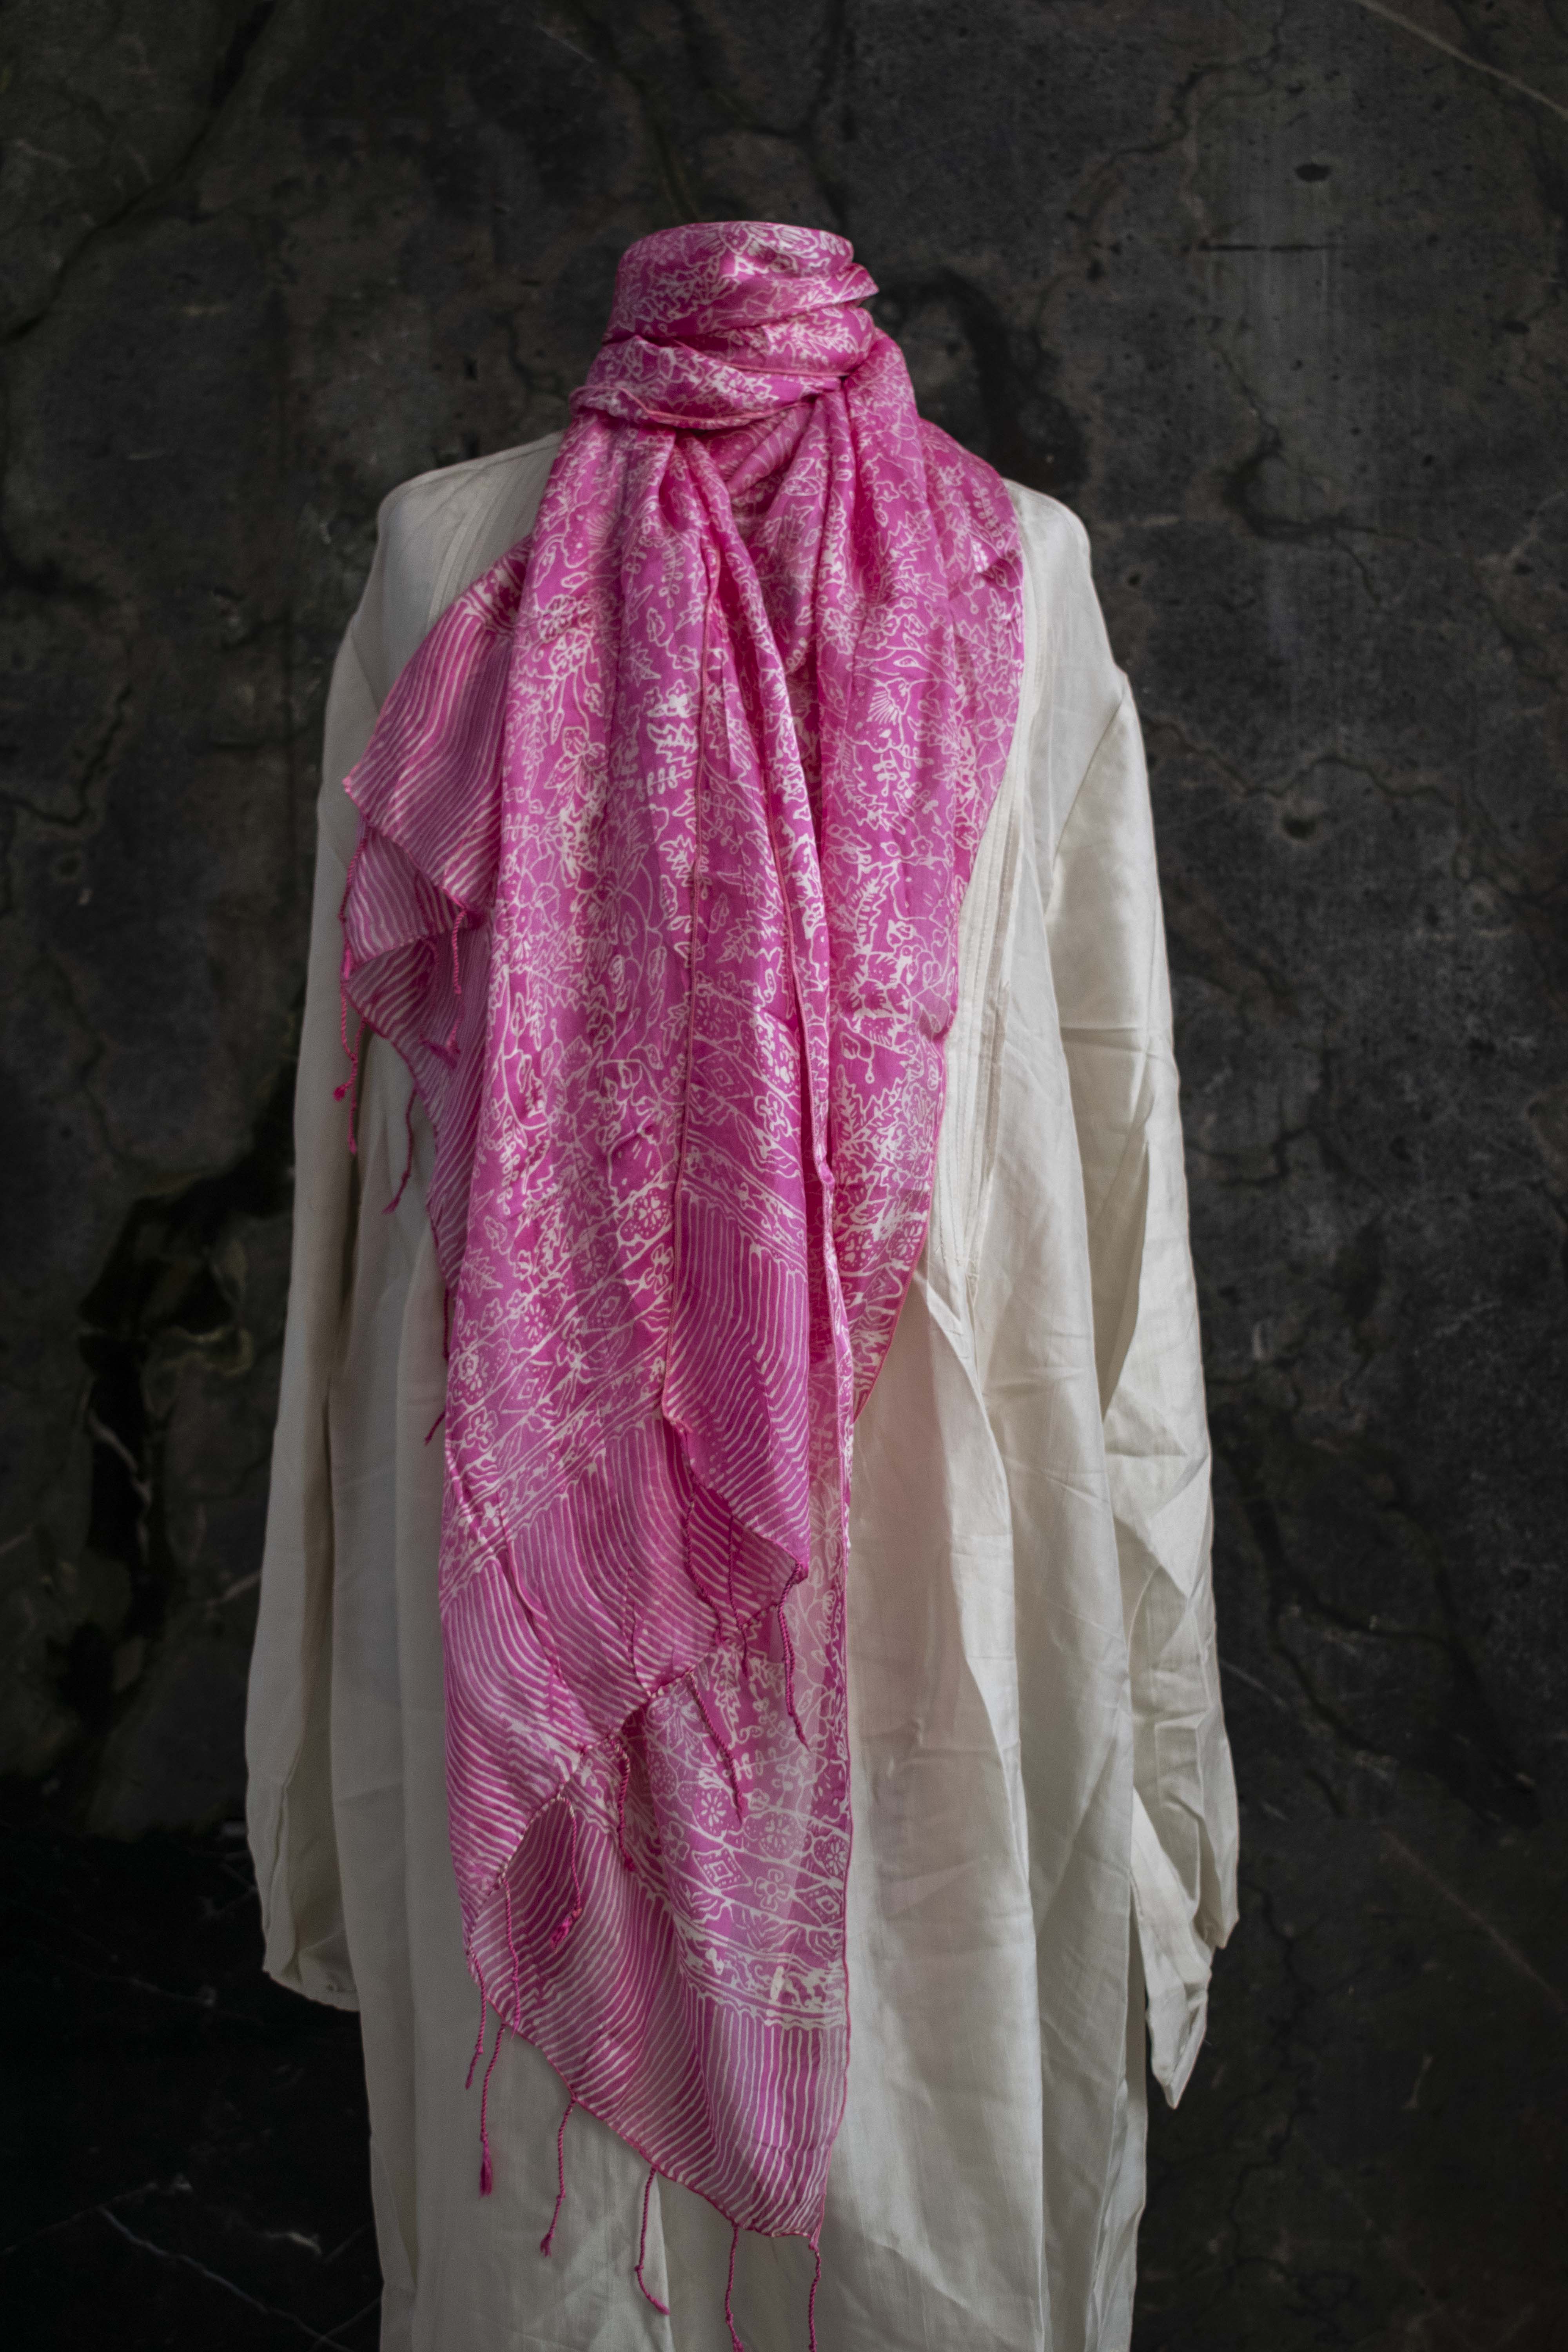 Pañuelo batik estampado en Seda natural 